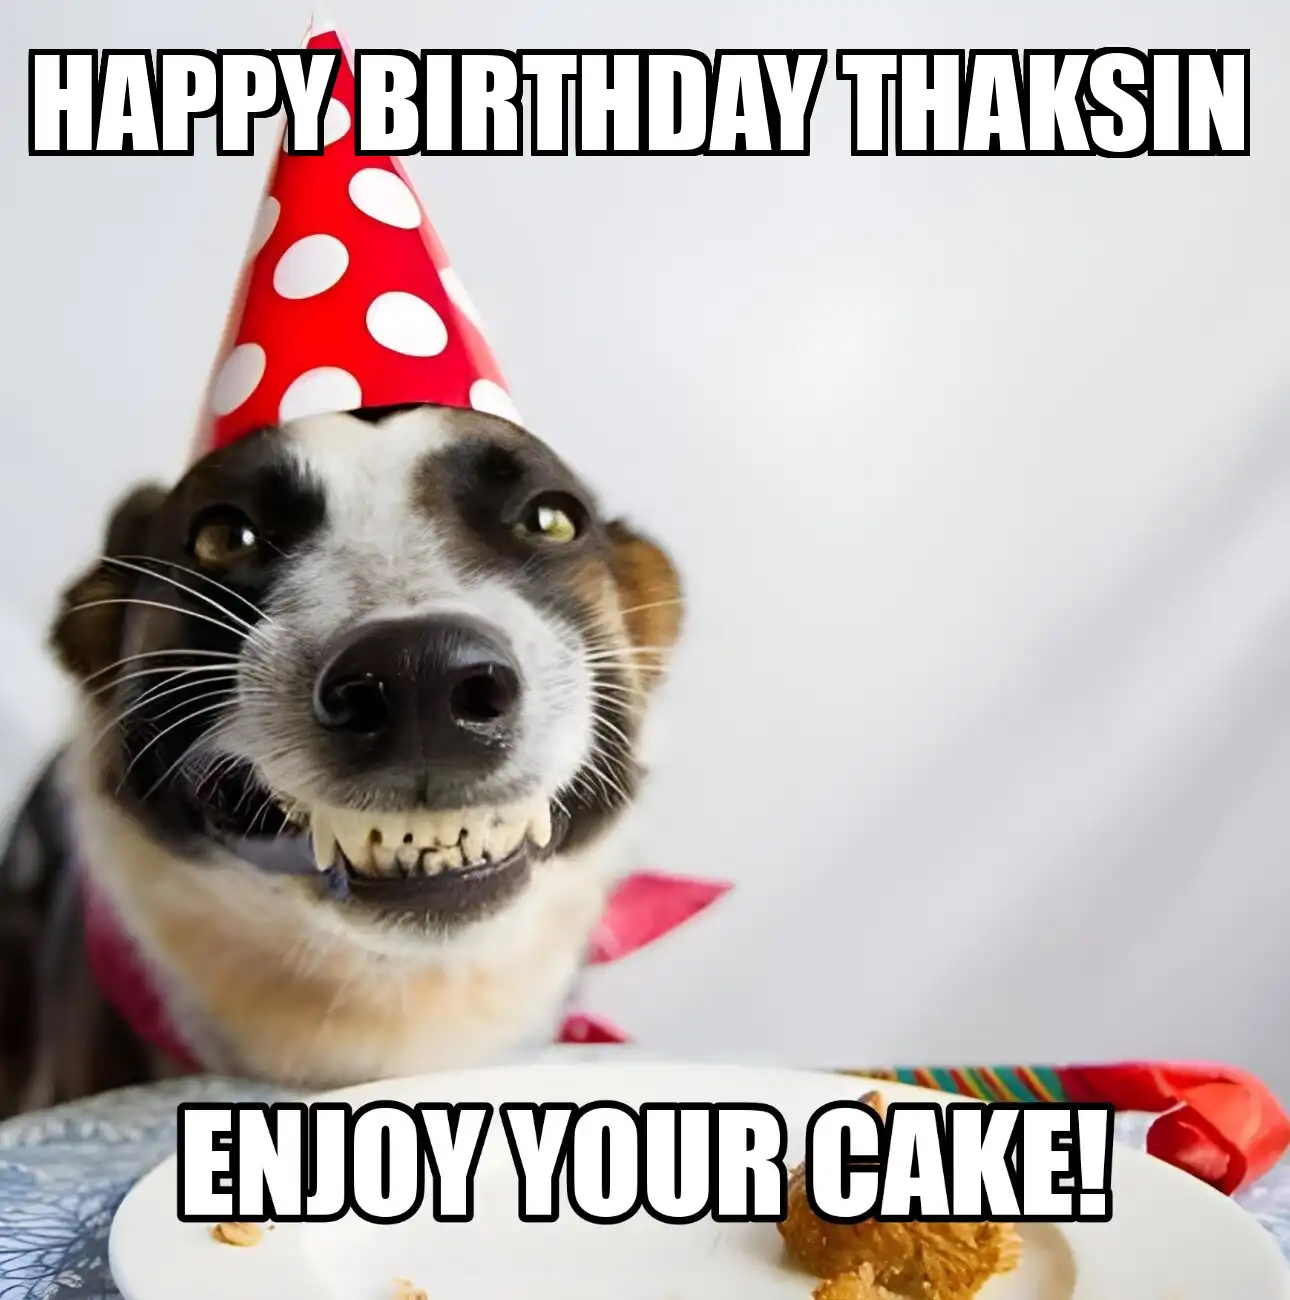 Happy Birthday Thaksin Enjoy Your Cake Dog Meme